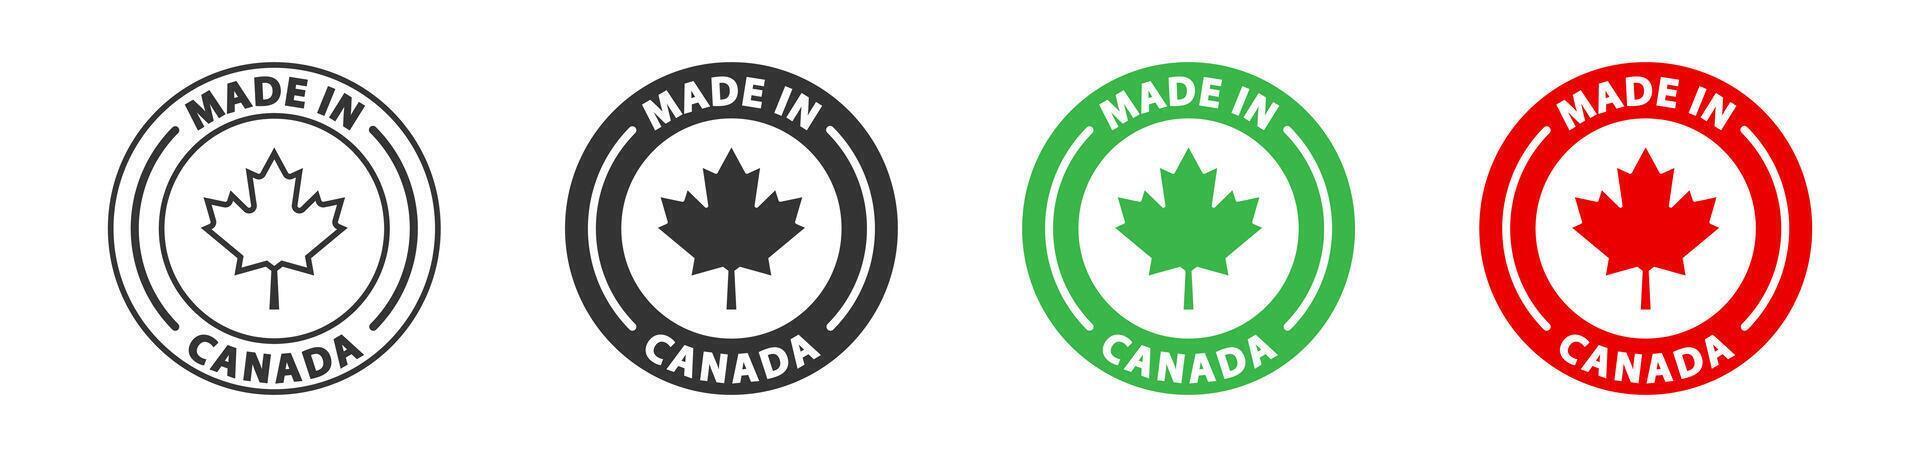 gemaakt in Canada logo. etiket voor producten gemaakt in Canada. vector illustratie.